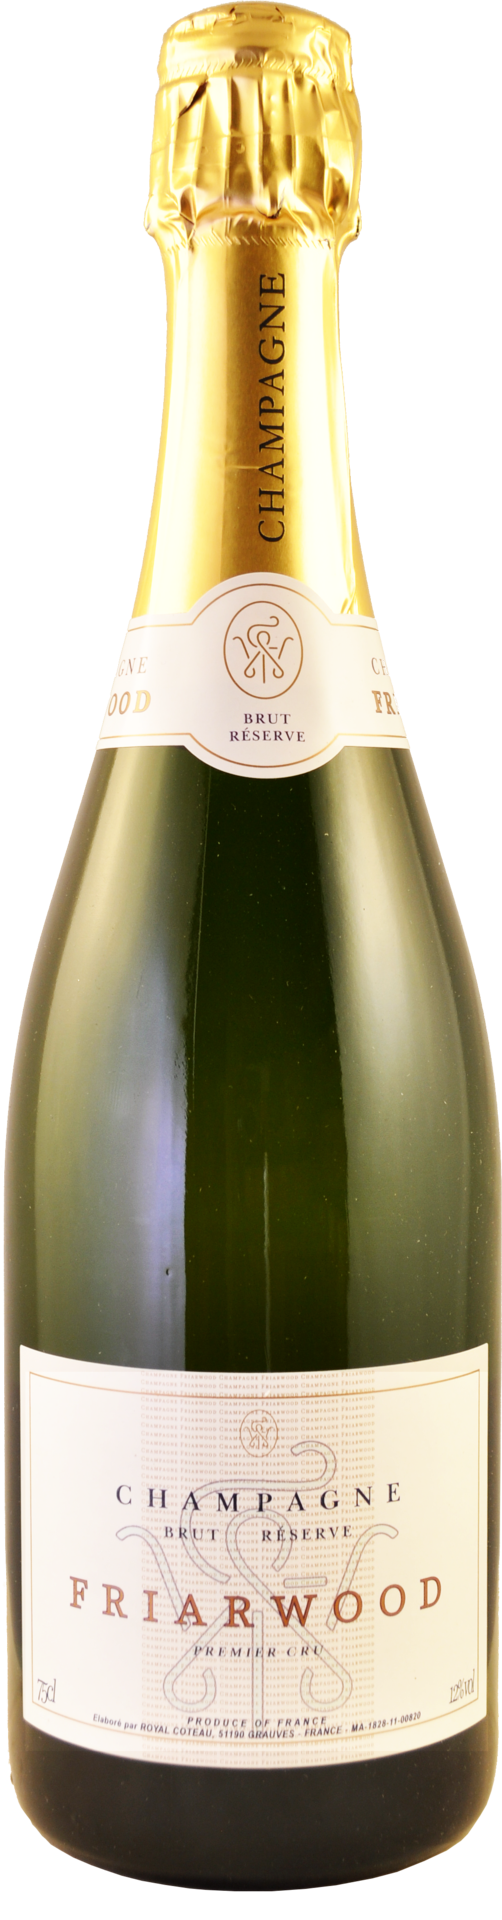 NV 150CL Friarwood Champagne - Cotes des Blancs Friarwood 1er Cru - Brut